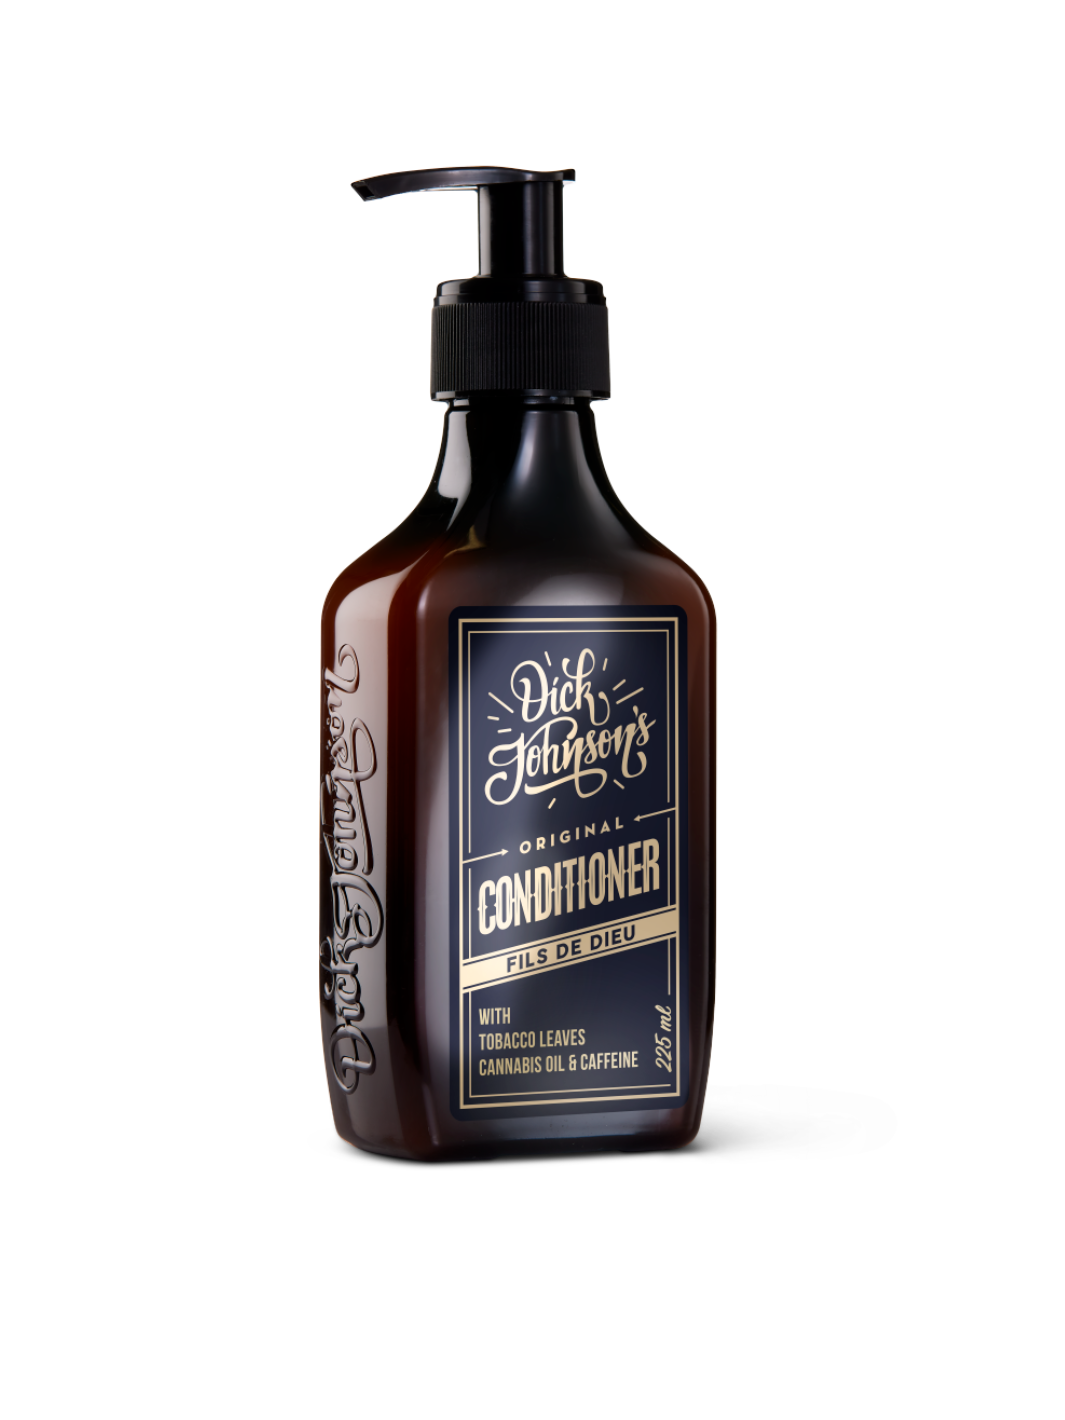 Dick Johnson Conditioner Fils De Dieu 225ml, angereichert mit Tabakblättern, Cannabisöl und Koffein, bietet intensive Pflege und Vitalität für das Haar, jetzt bei Phullcutz verfügbar.